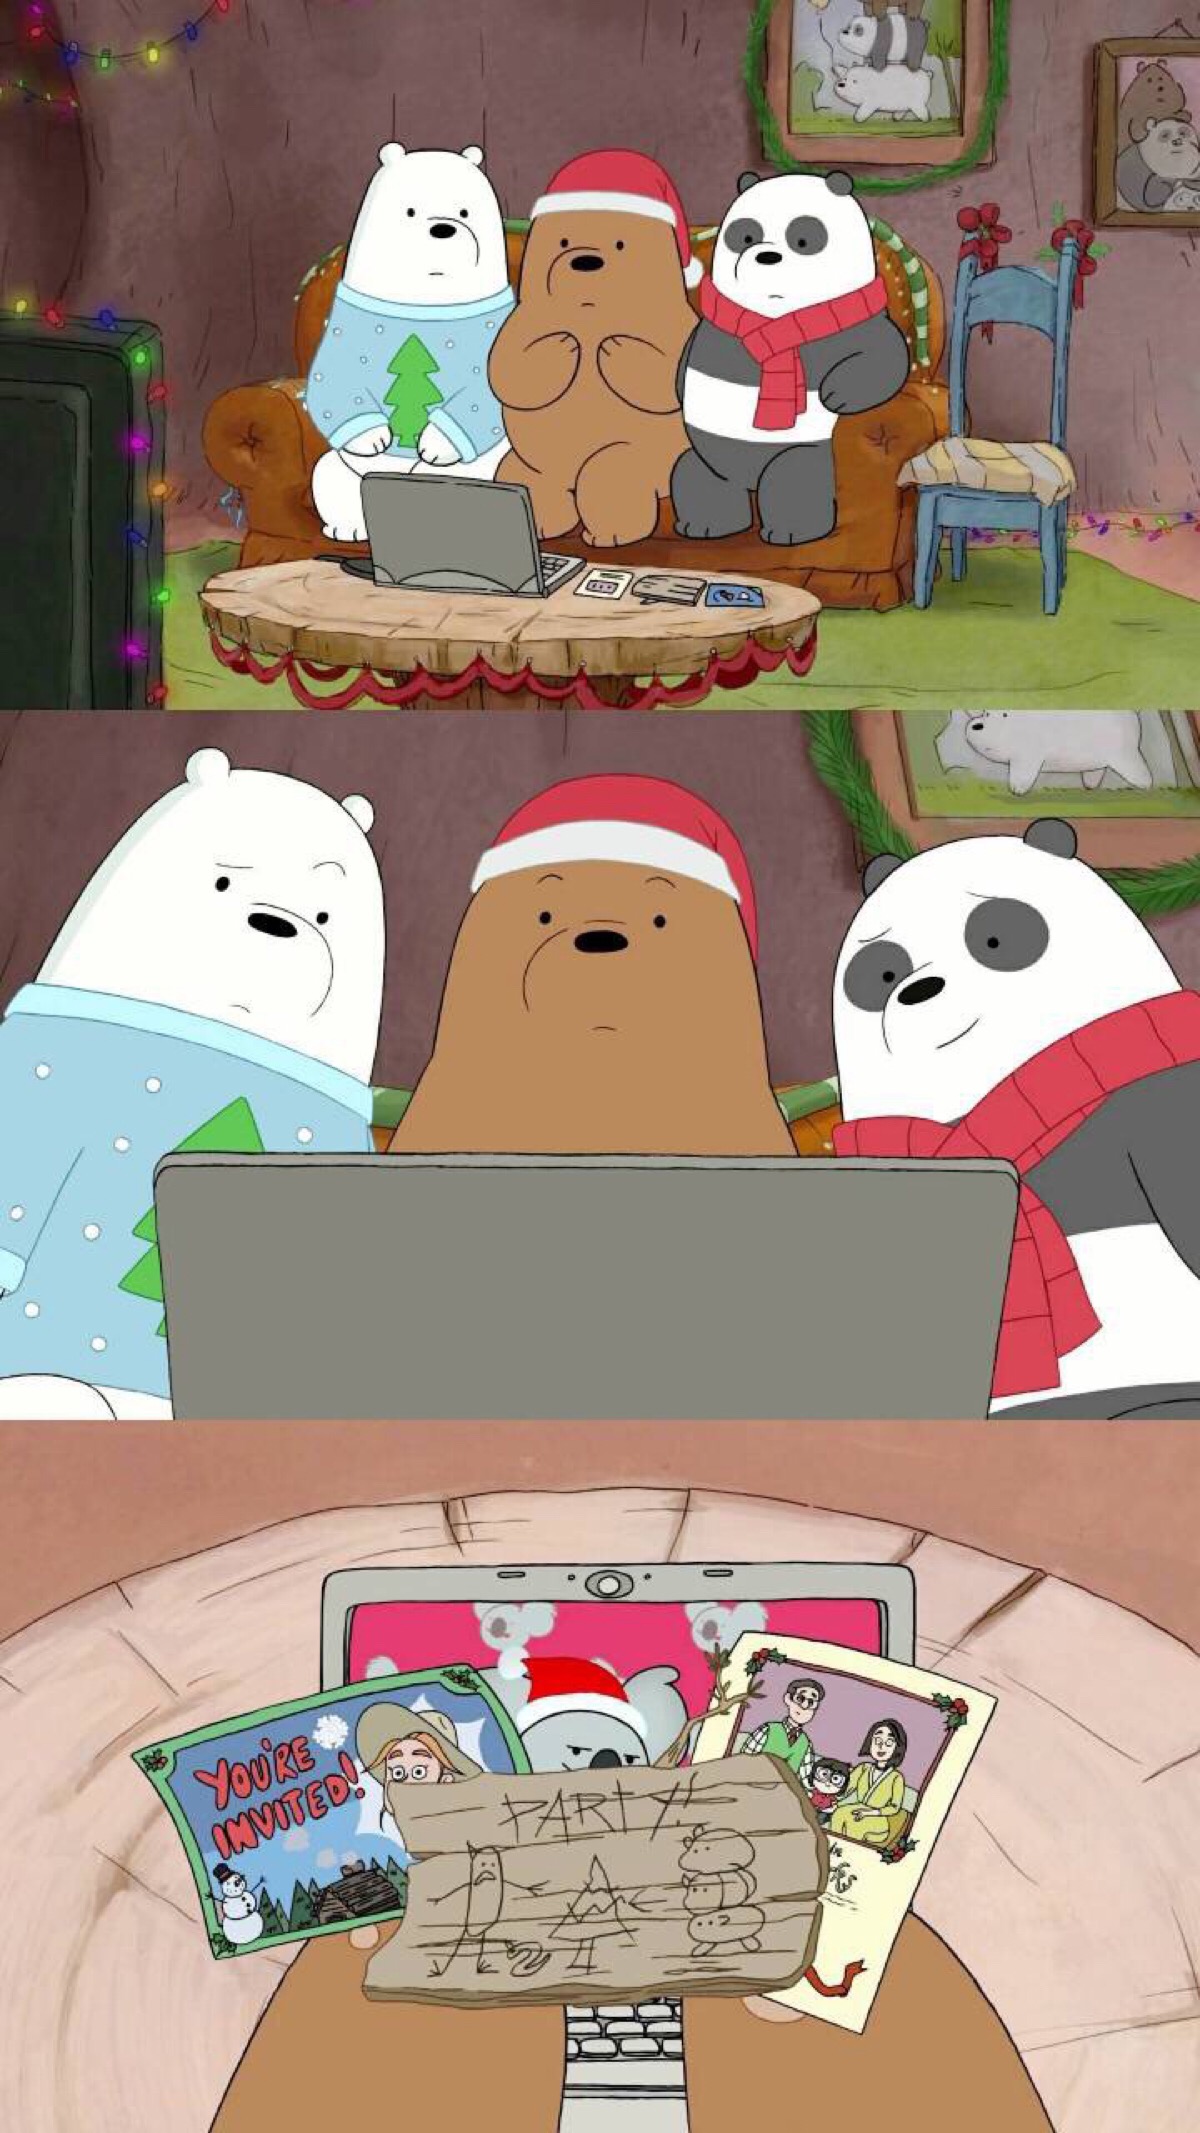 咱们裸熊 咱们裸熊 wbb 这是一部美国的动画片 主角是三只熊 做每一件